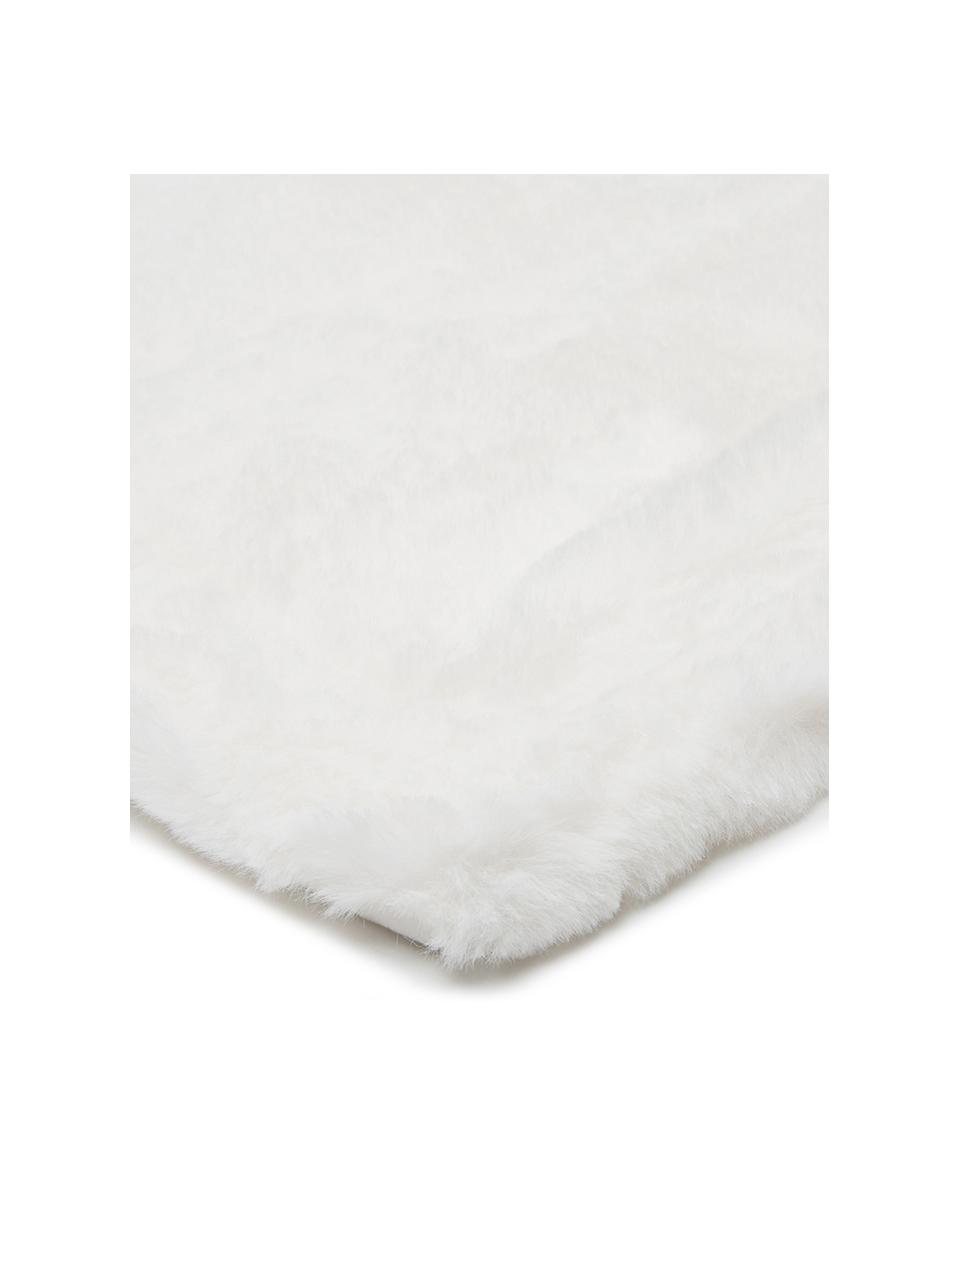 Kuscheldecke Mette aus Kunstfell in Weiß, Vorderseite: 100% Polyester, Rückseite: 100% Polyester, Weiß, 150 x 200 cm